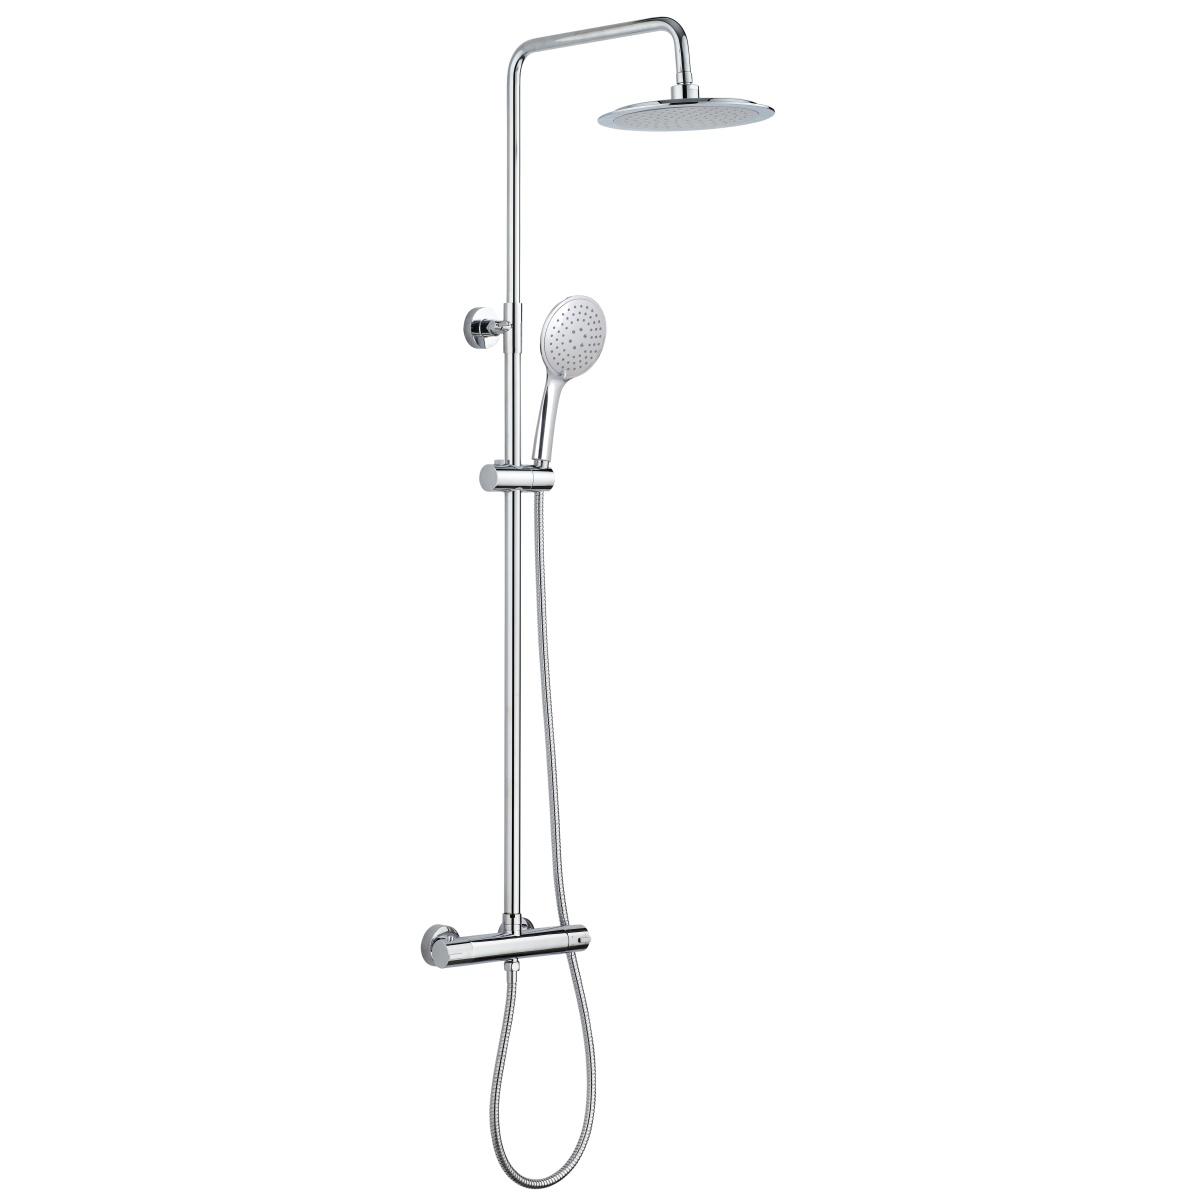 YS34131C Cột sen tắm, cột tắm mưa có vòi chỉnh nhiệt, có thể điều chỉnh độ cao;